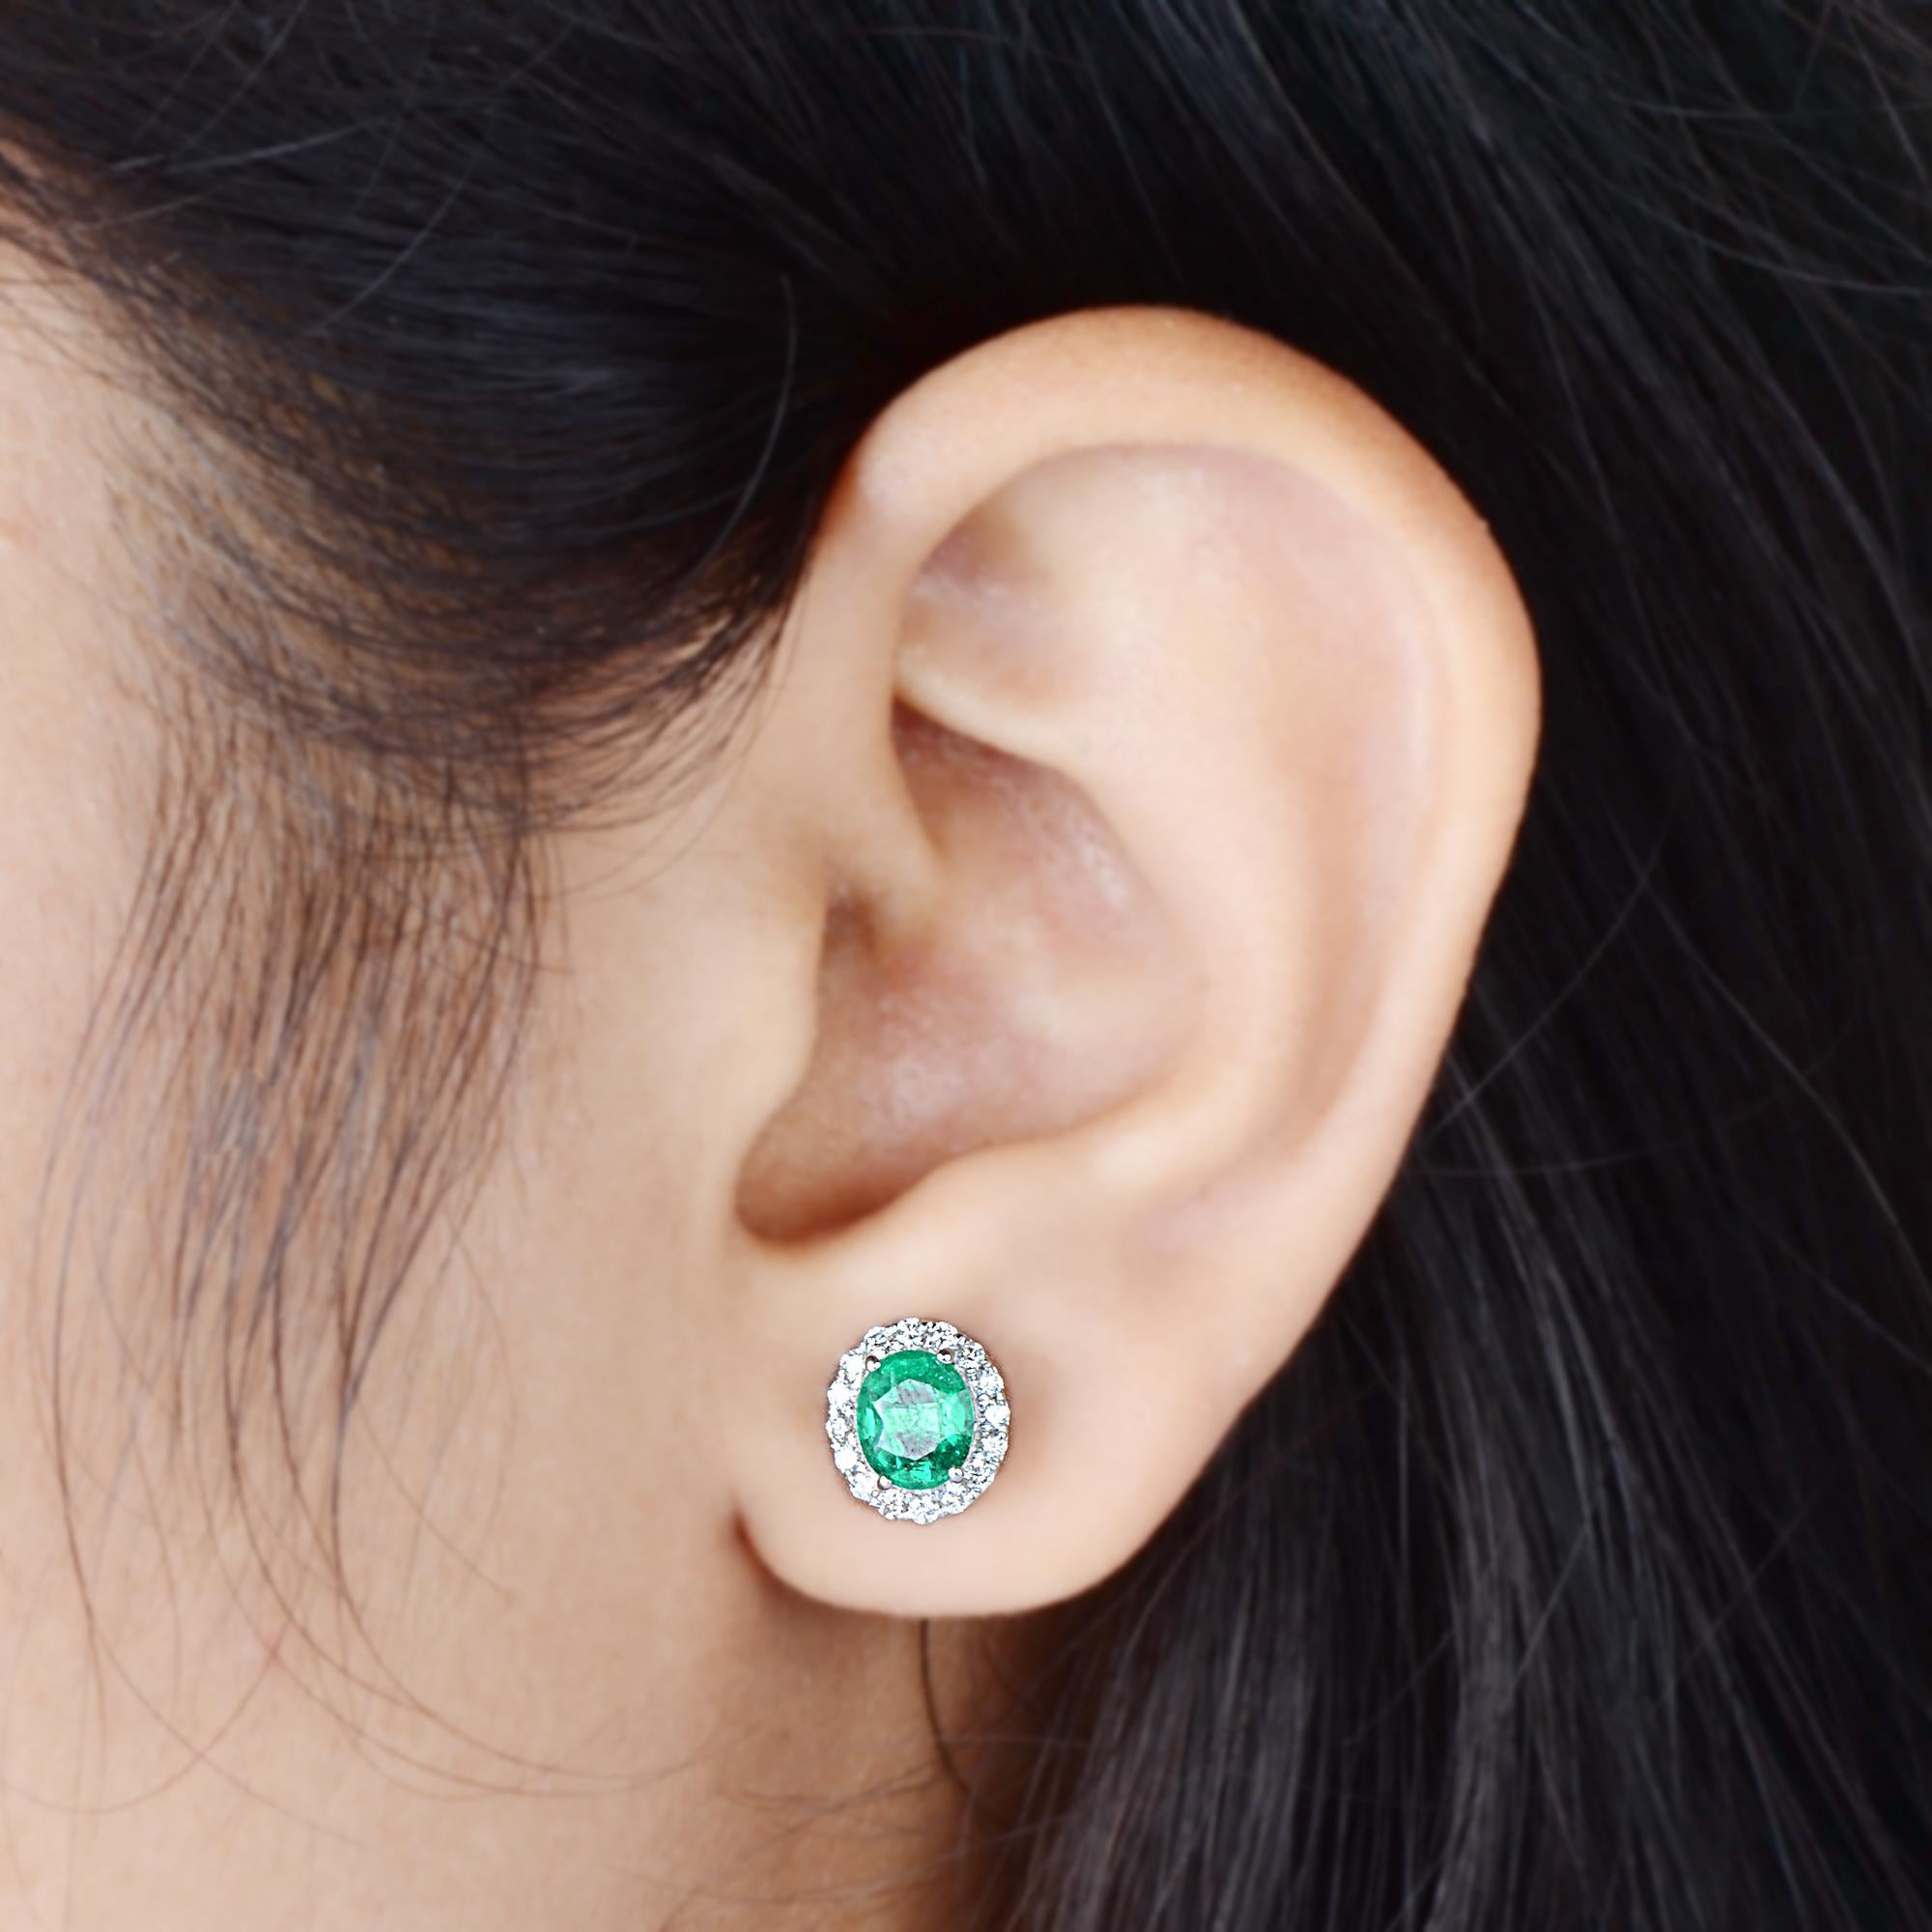 Oval Cut Oval Zambian Emerald Gemstone Stud Earrings Diamond 14 Karat White Gold Jewelry For Sale